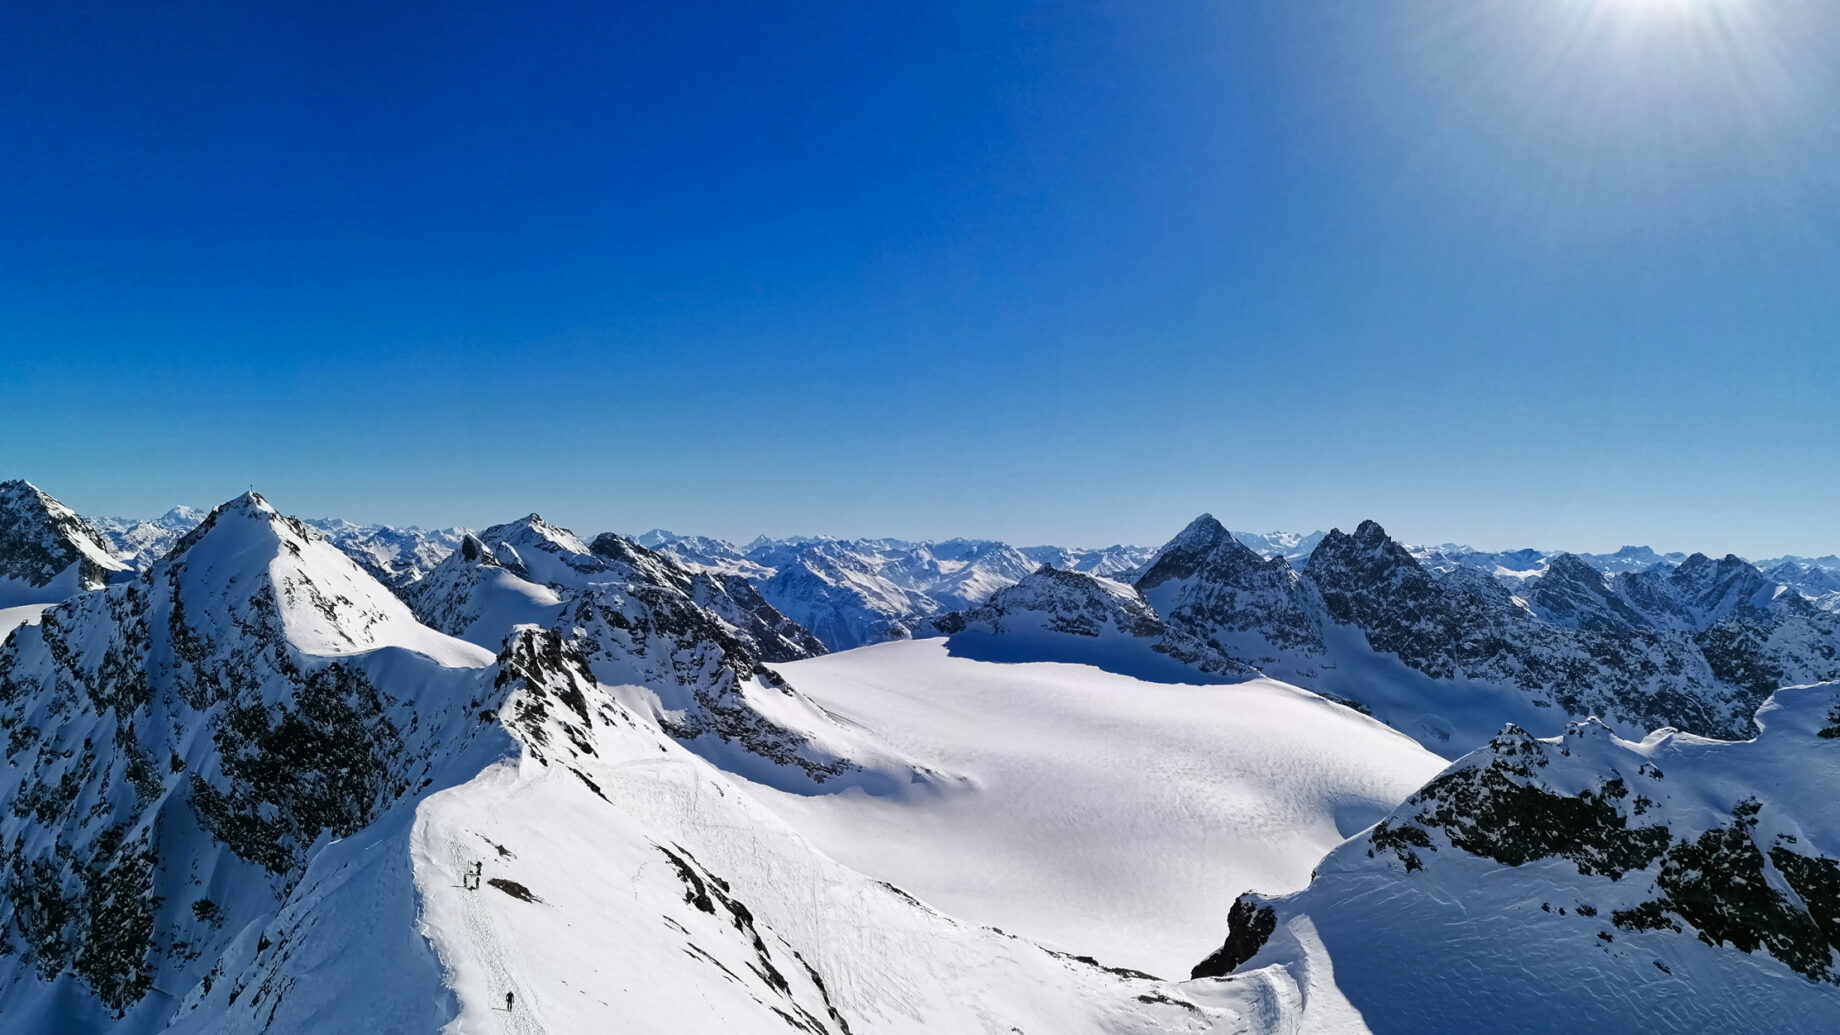 Gipfelblick: links Silvrettahorn, dainter Piz Buin, mittig der Klostertaler Gletscher mit Rotfluh. Foto: Norman und Lisa